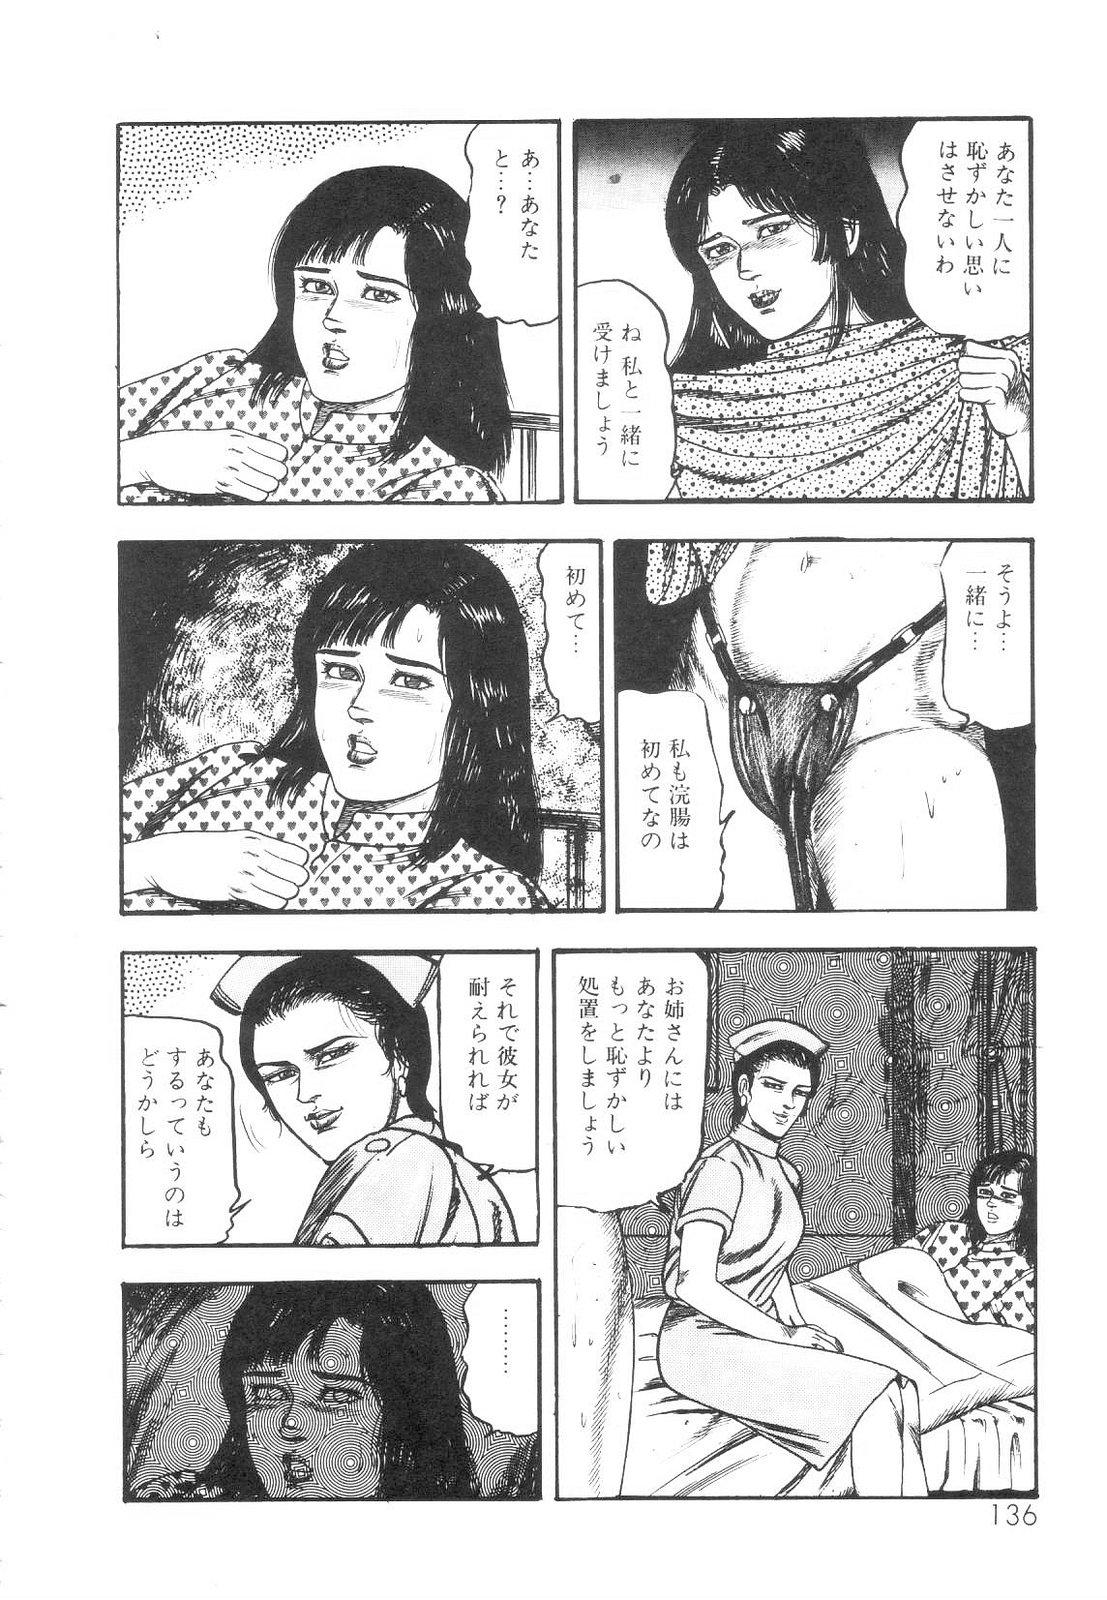 Shiro no Mokushiroku Vol. 1 - Sei Shojo Shion no Shou 136